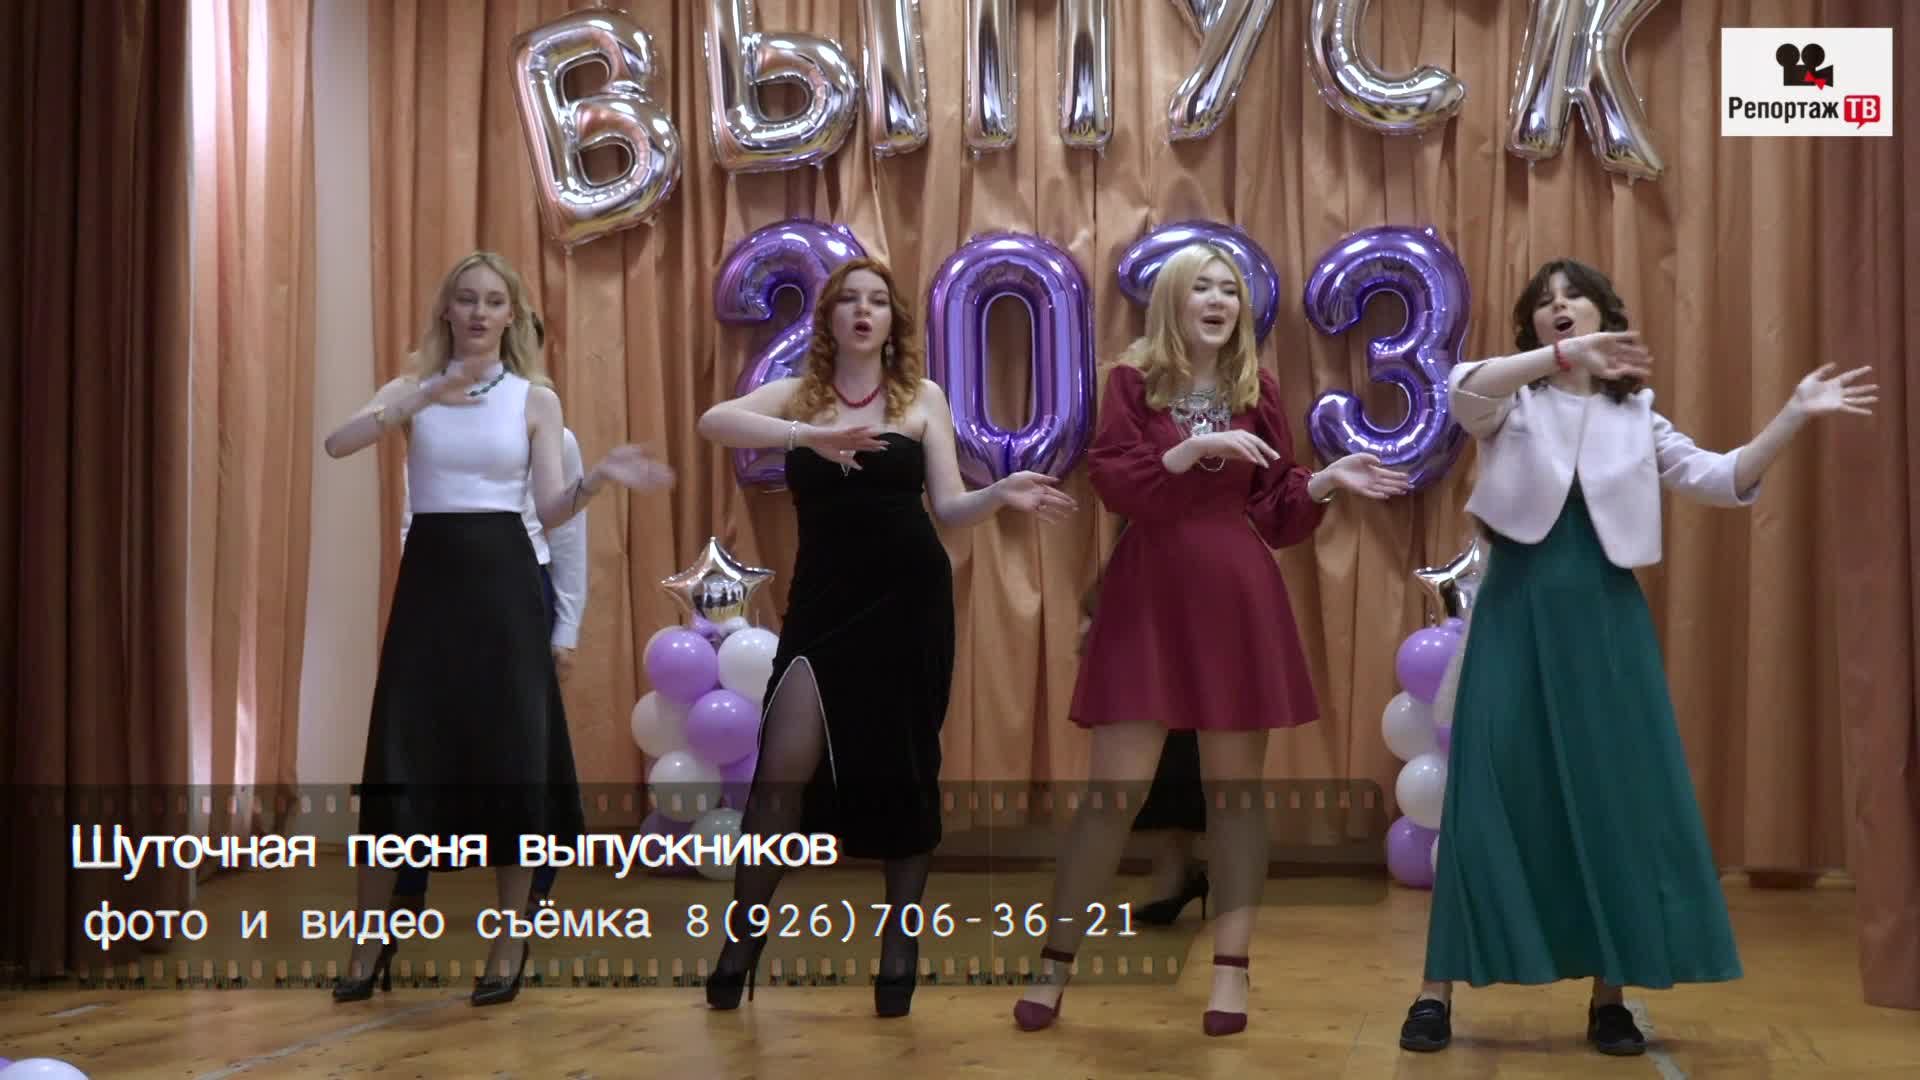 Порно голые девушки поют и танцуют